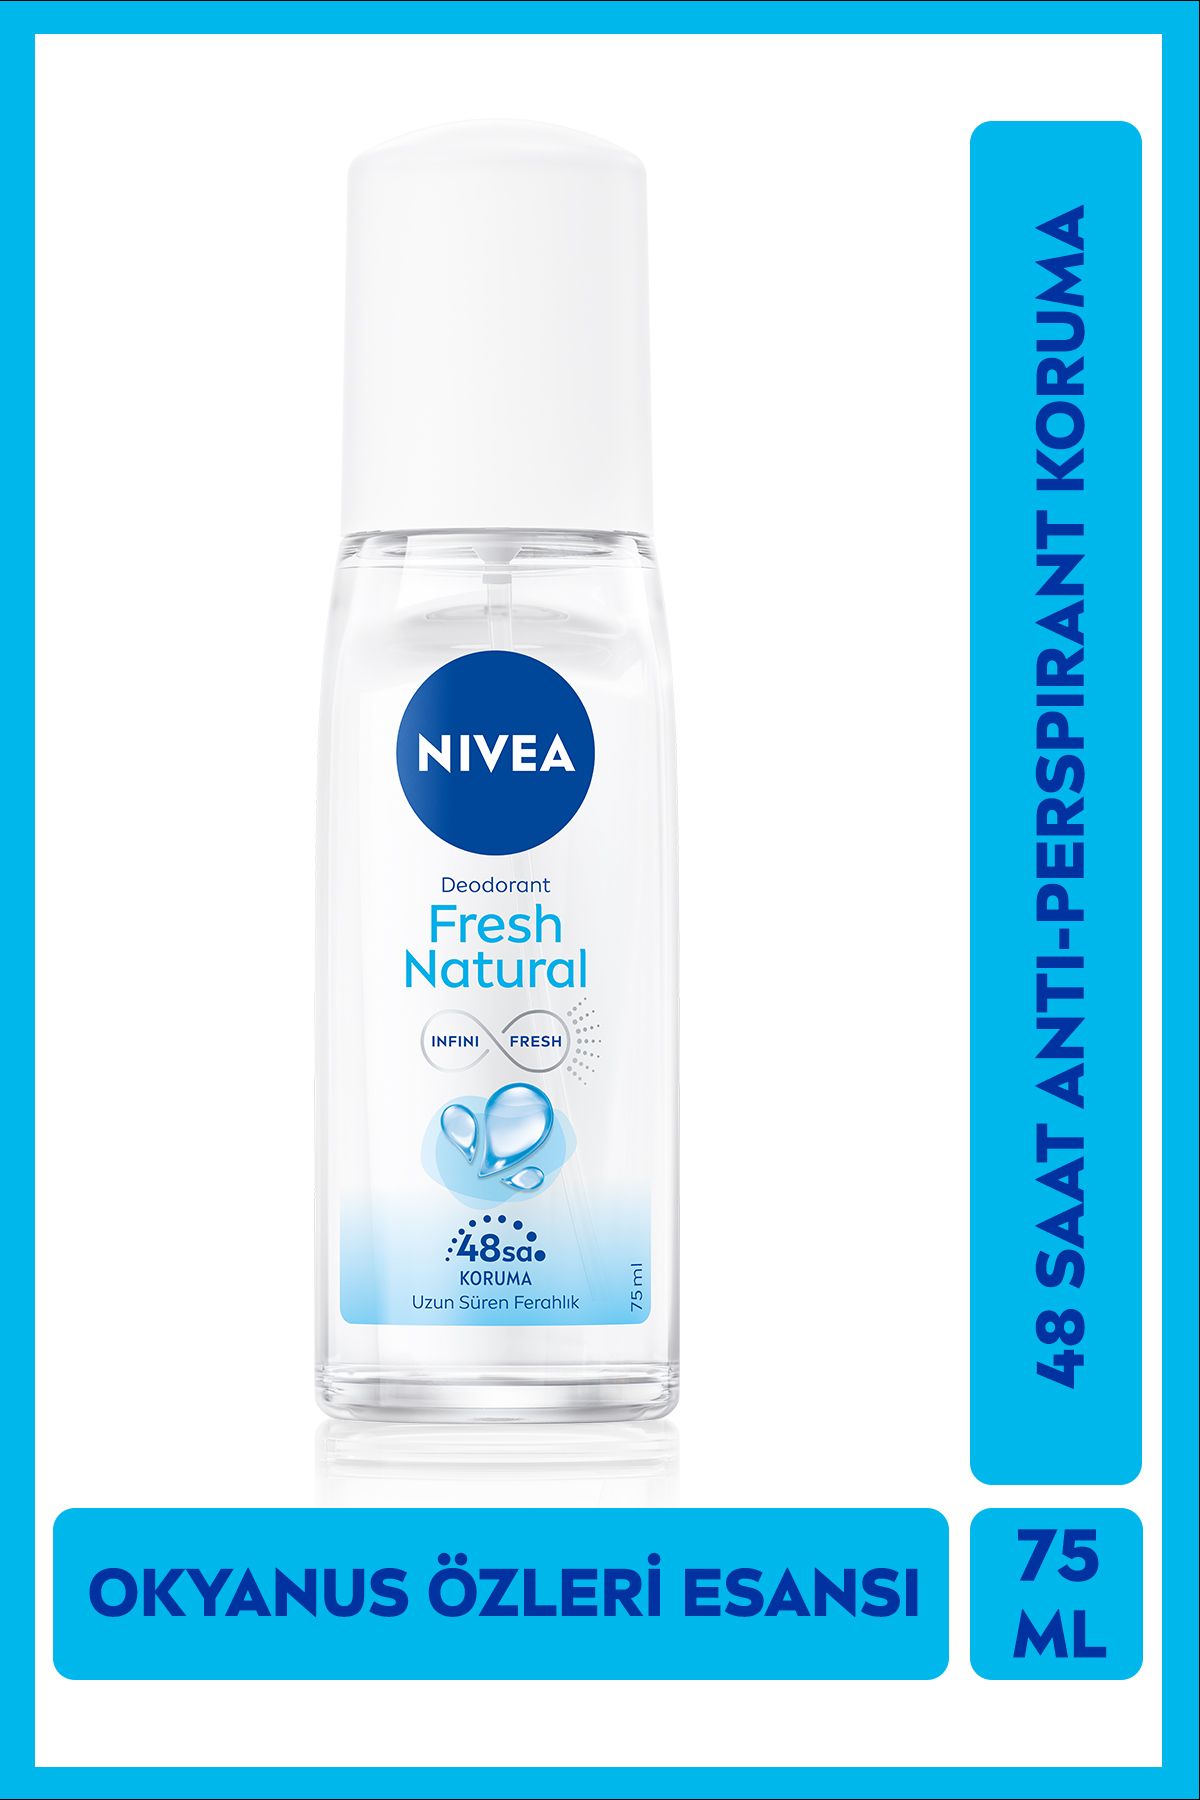 NIVEA Kadın Pump Sprey Deodorant 75ml, 48 Saat Anti-perspirant Koruma, Okyanus Özleri Kokusu